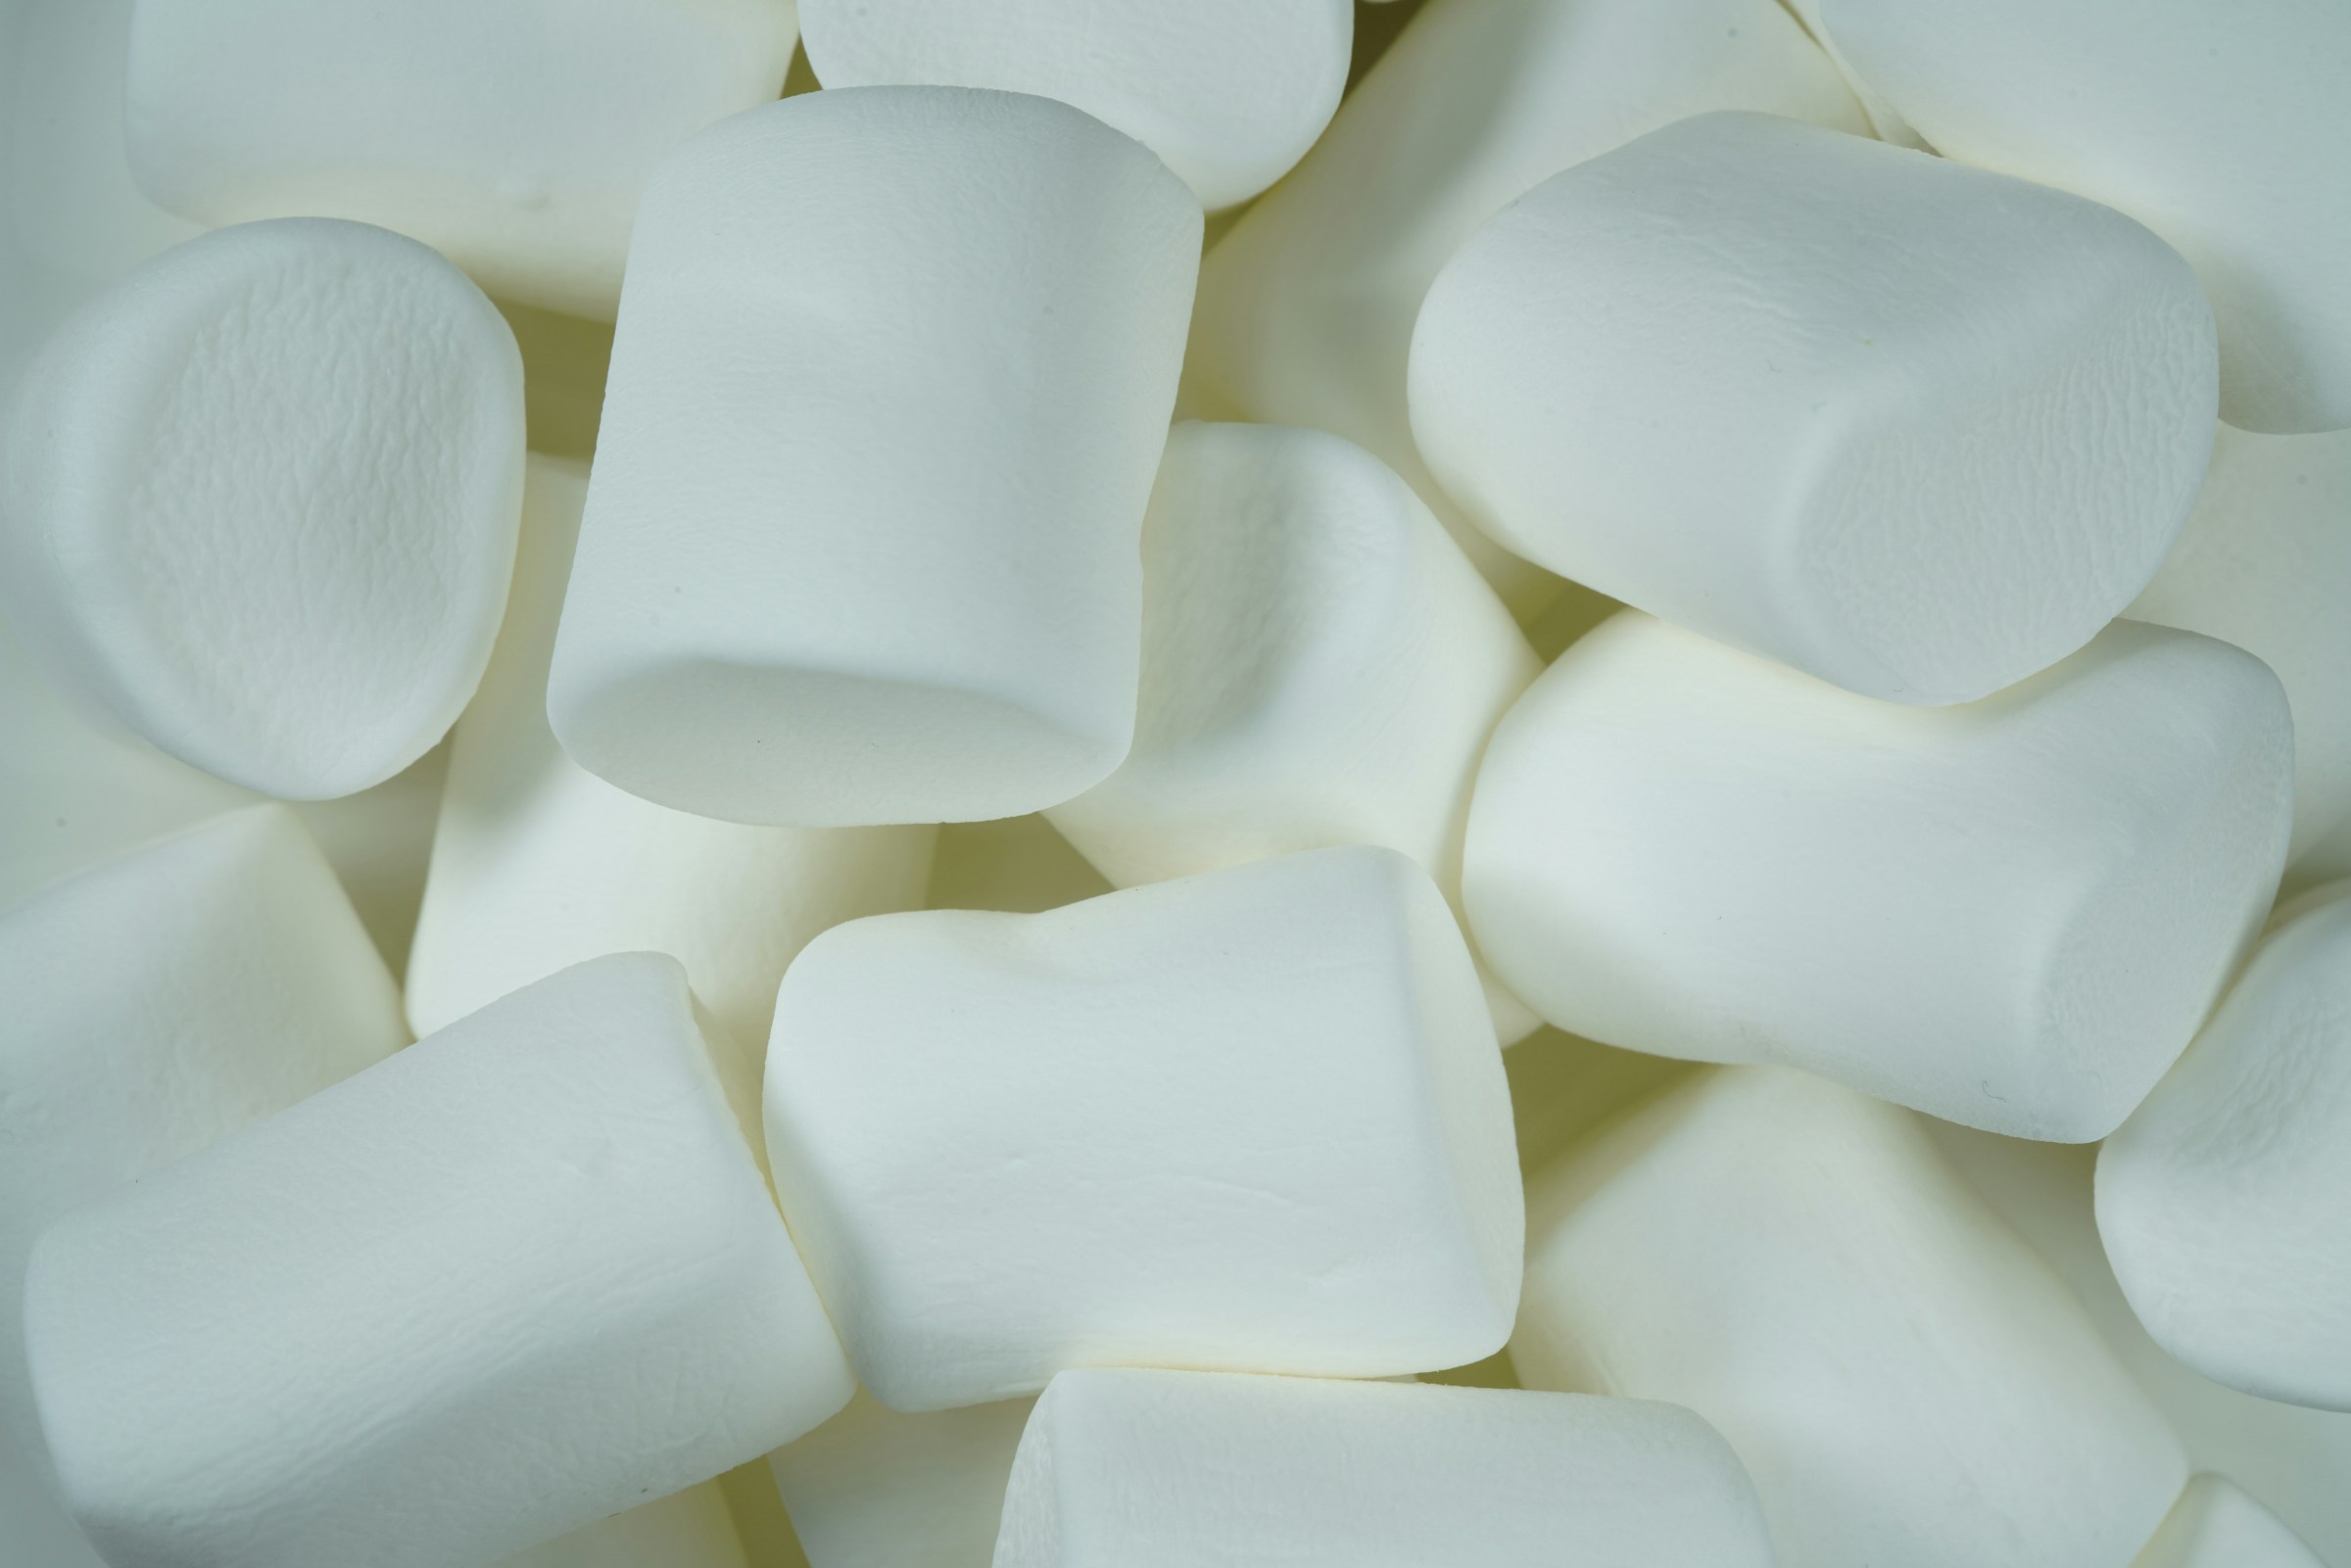 Ein Haufen Marshmallows | Quelle: Unsplash